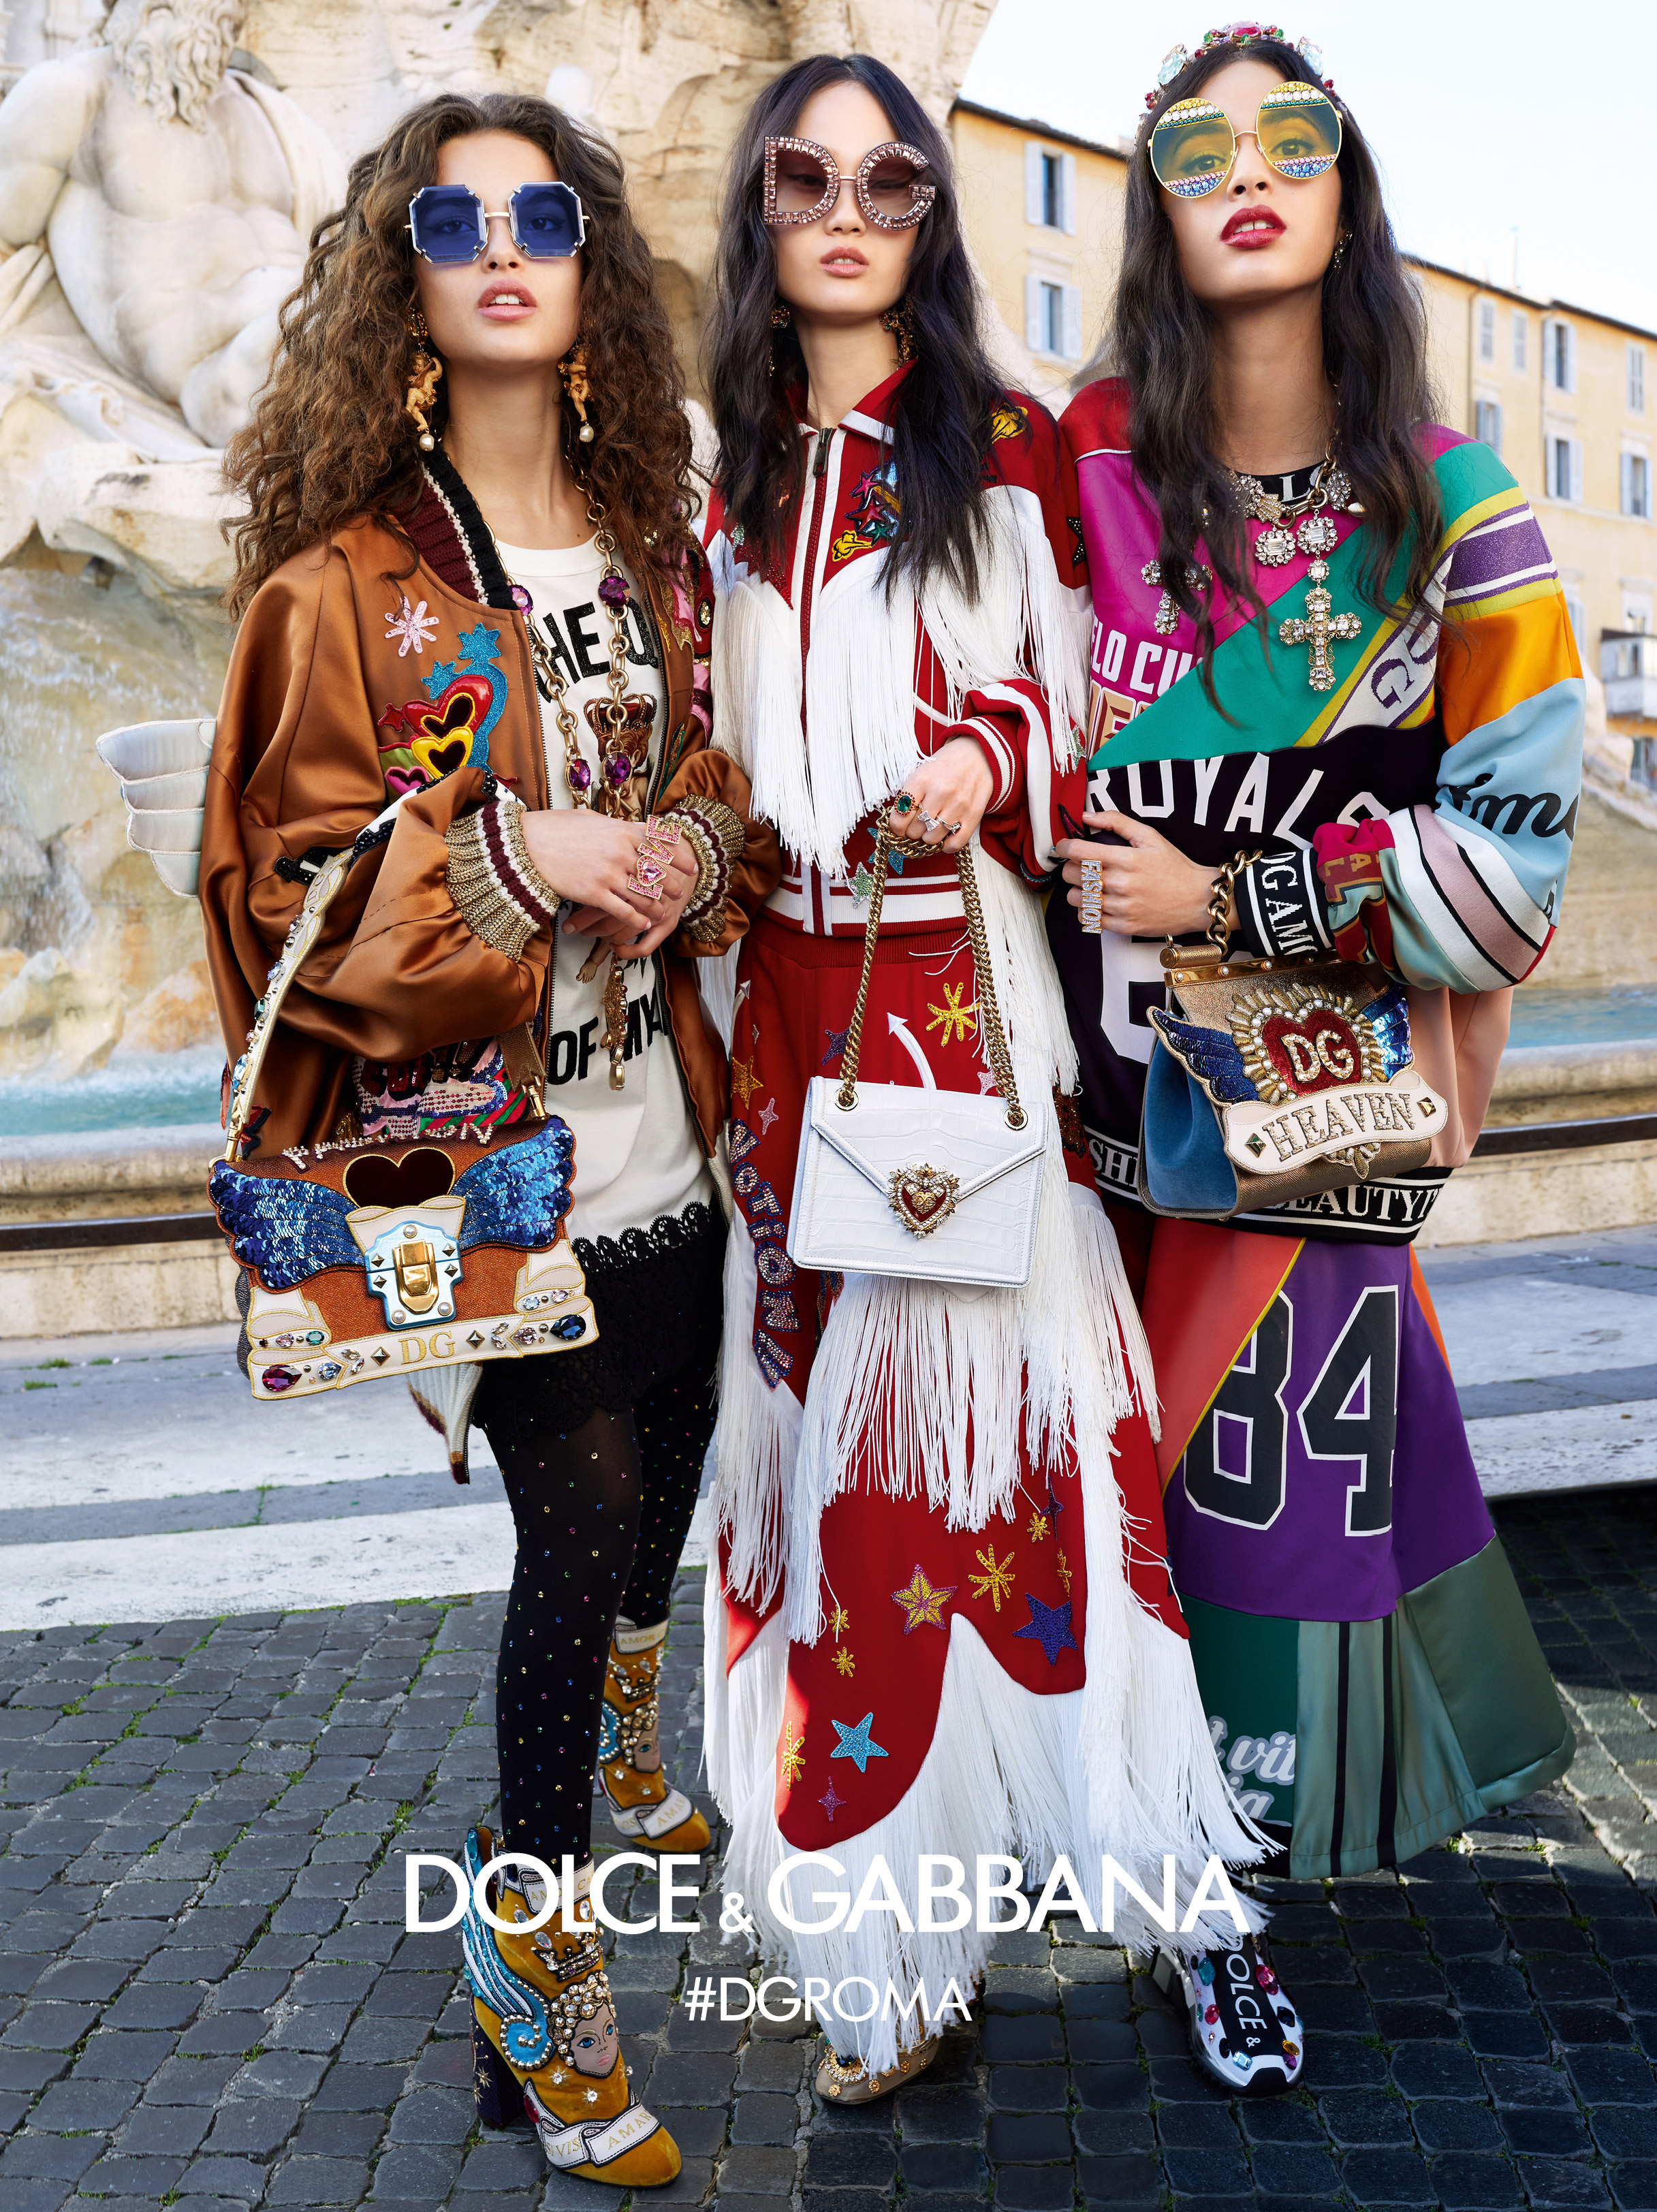 Dolce & Gabbana Fall Winter 2018-19 Ad Campaign